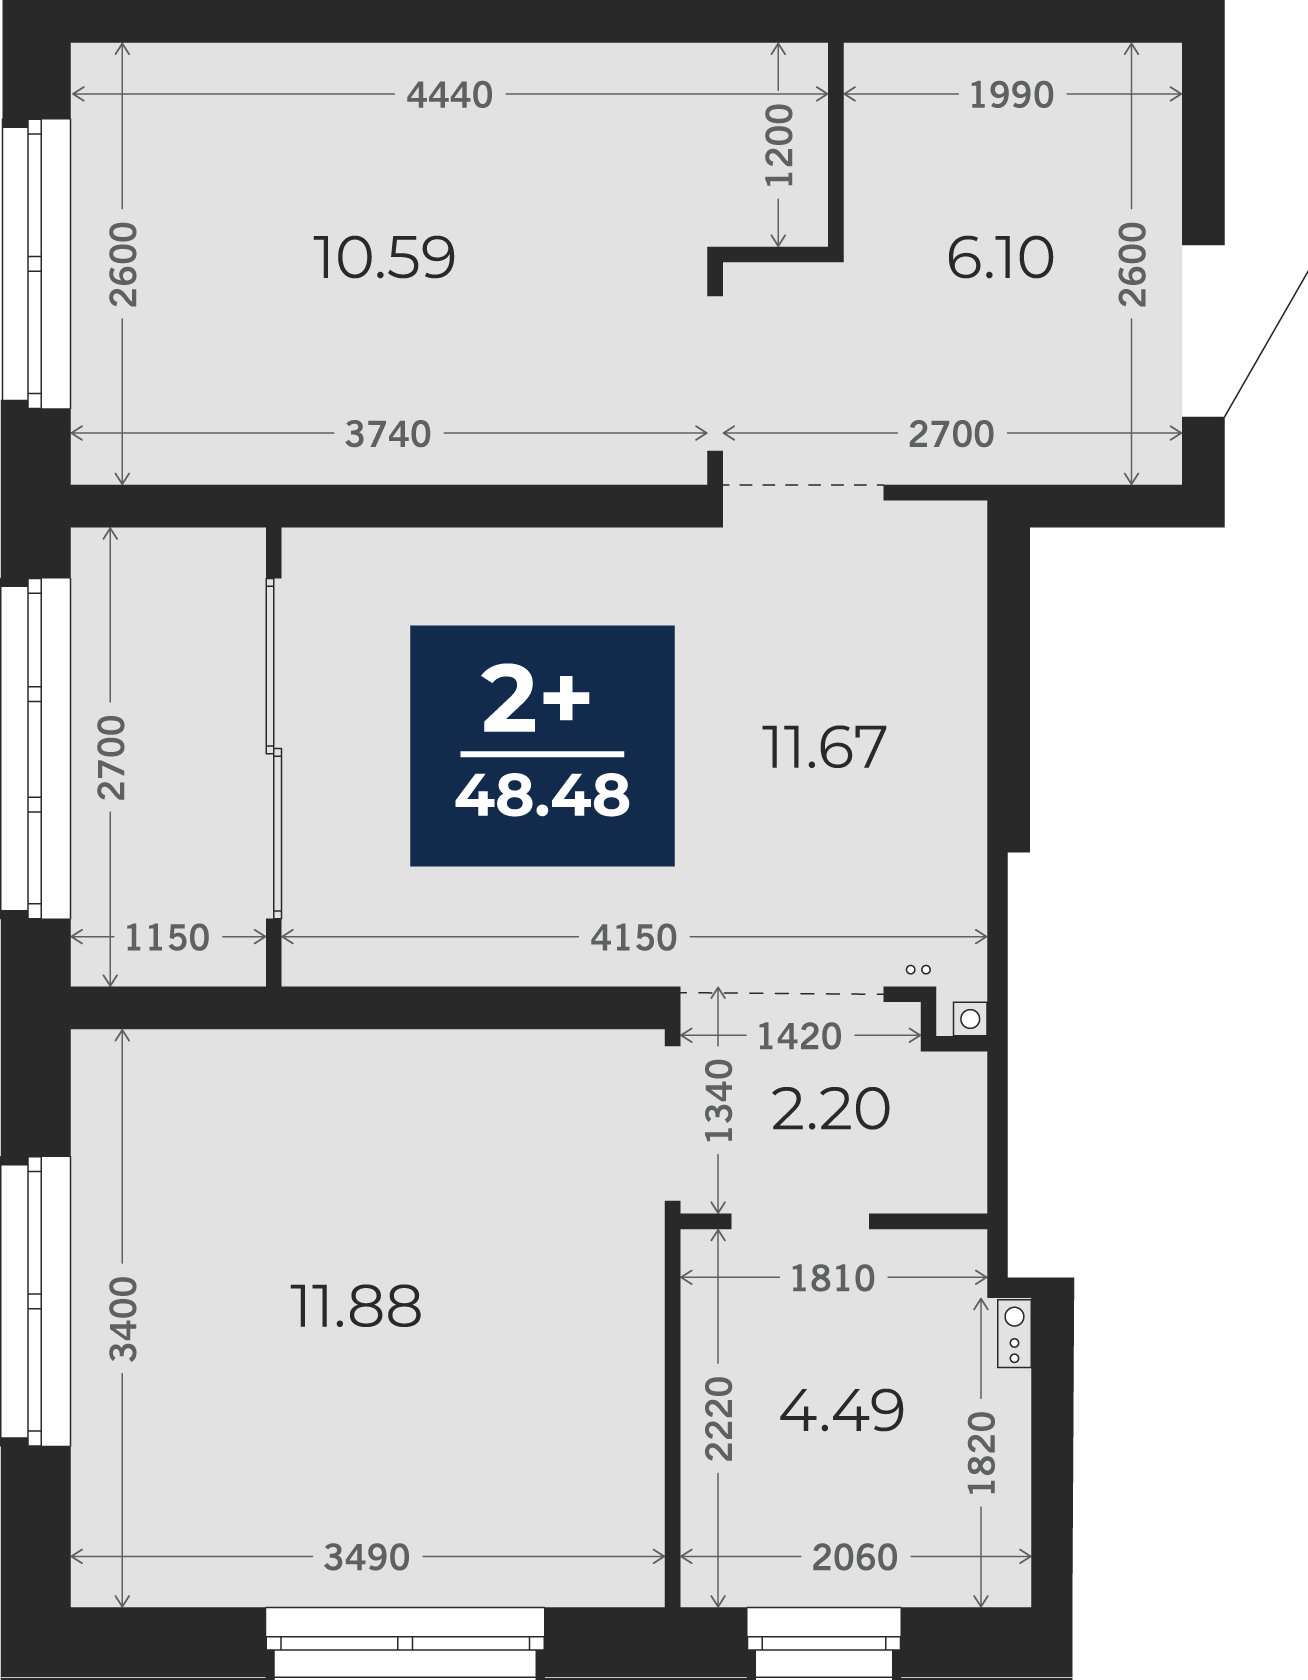 Квартира № 102, 2-комнатная, 48.48 кв. м, 11 этаж